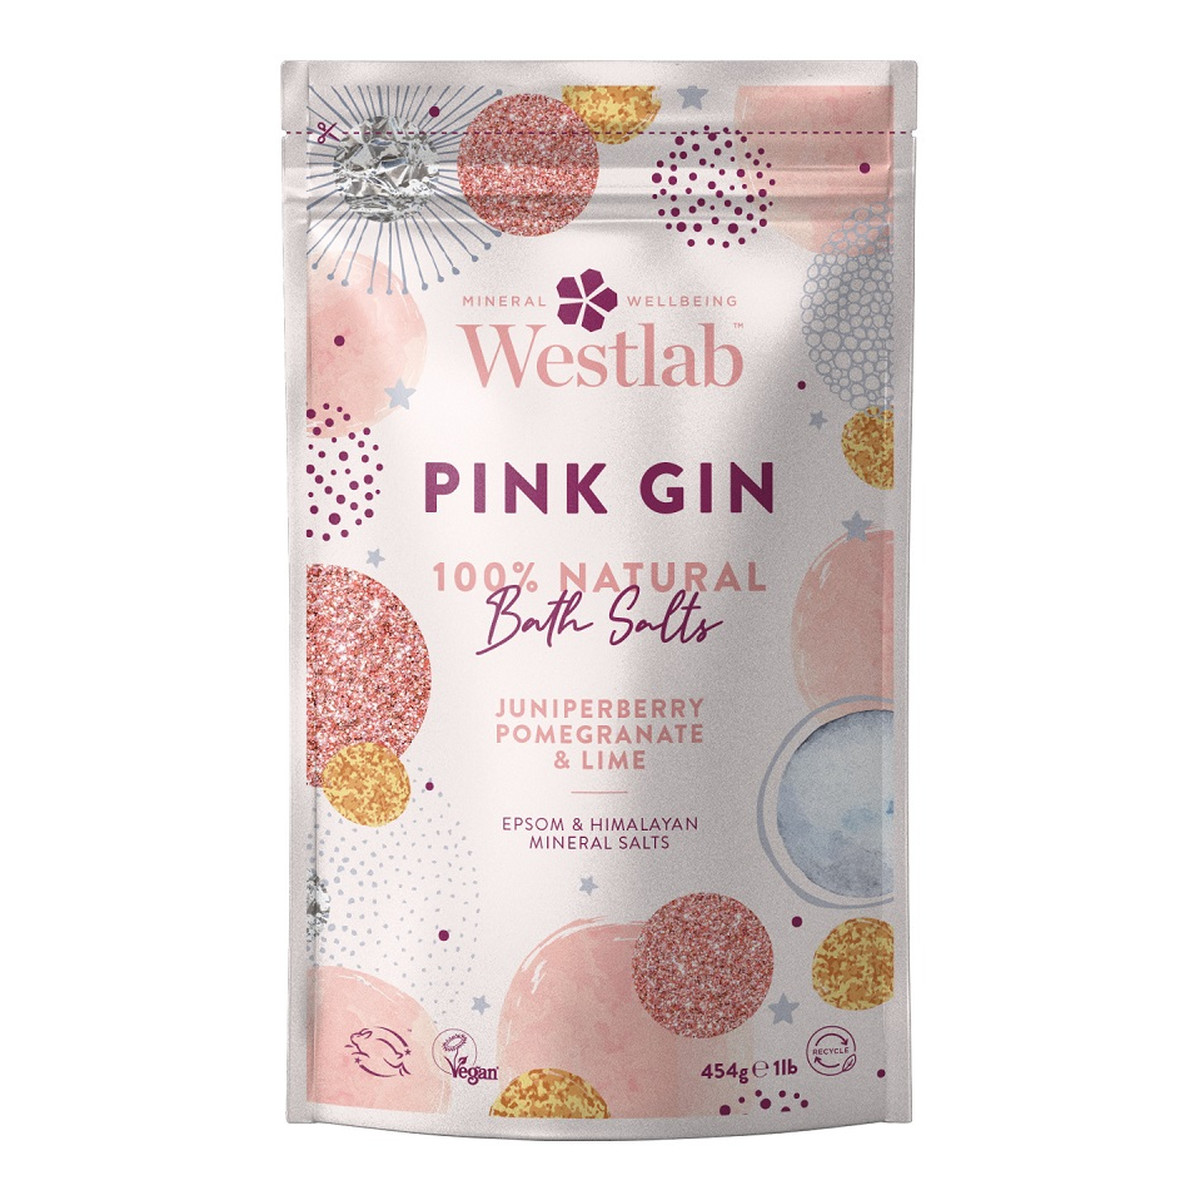 Westlab Pink gin bath salts rewitalizująco-oczyszczająca sól do kąpieli owoc jałowca & granat & limonka 454g